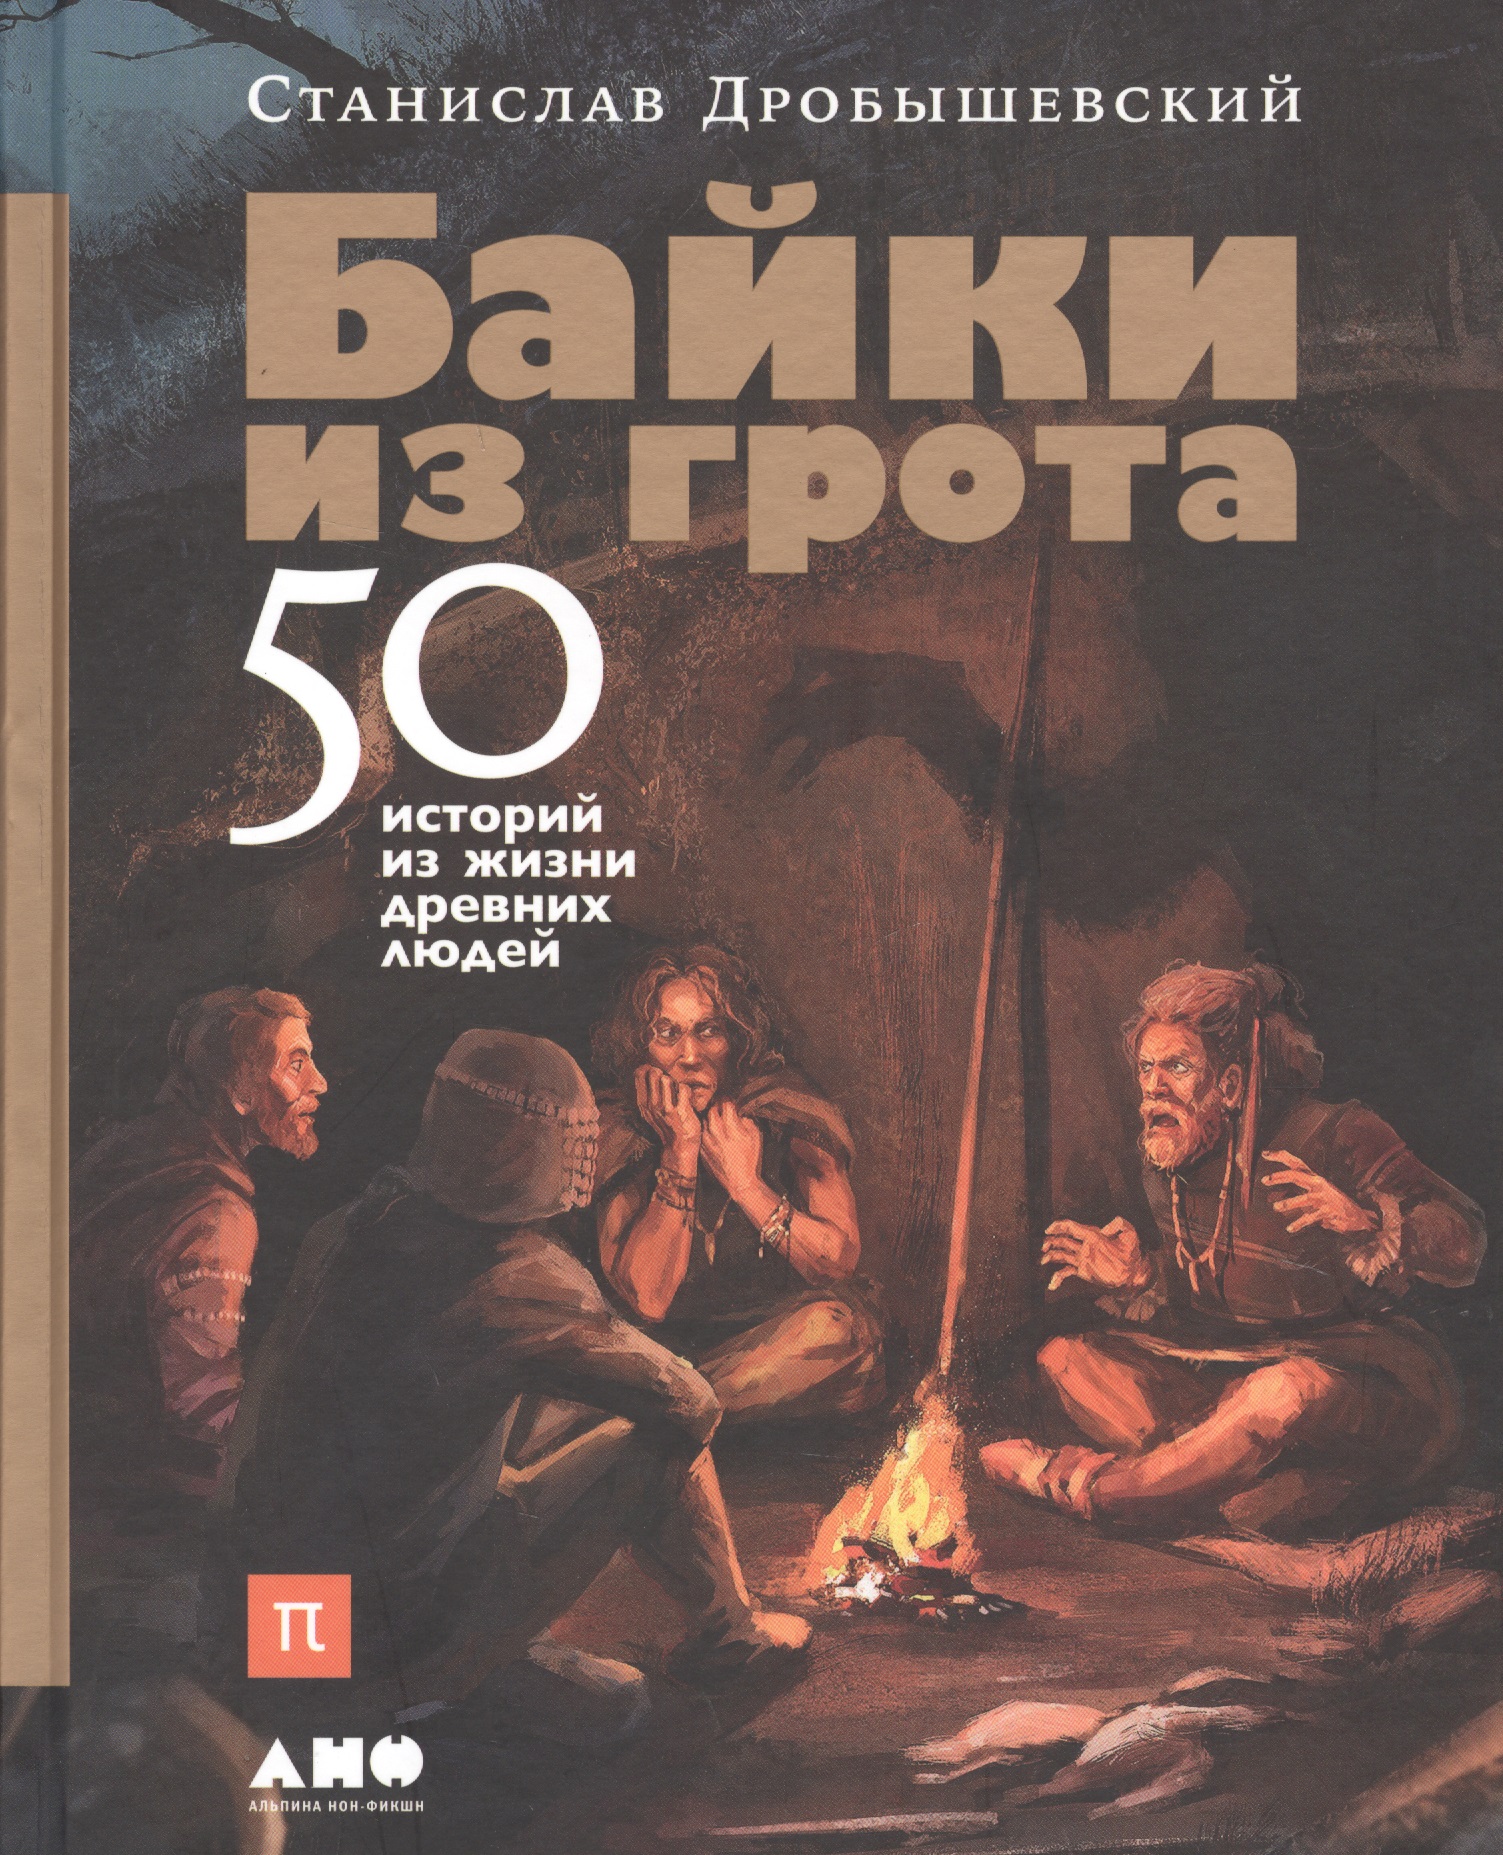 Дробышевский Станислав Владимирович - Байки из грота: 50 историй из жизни древних людей